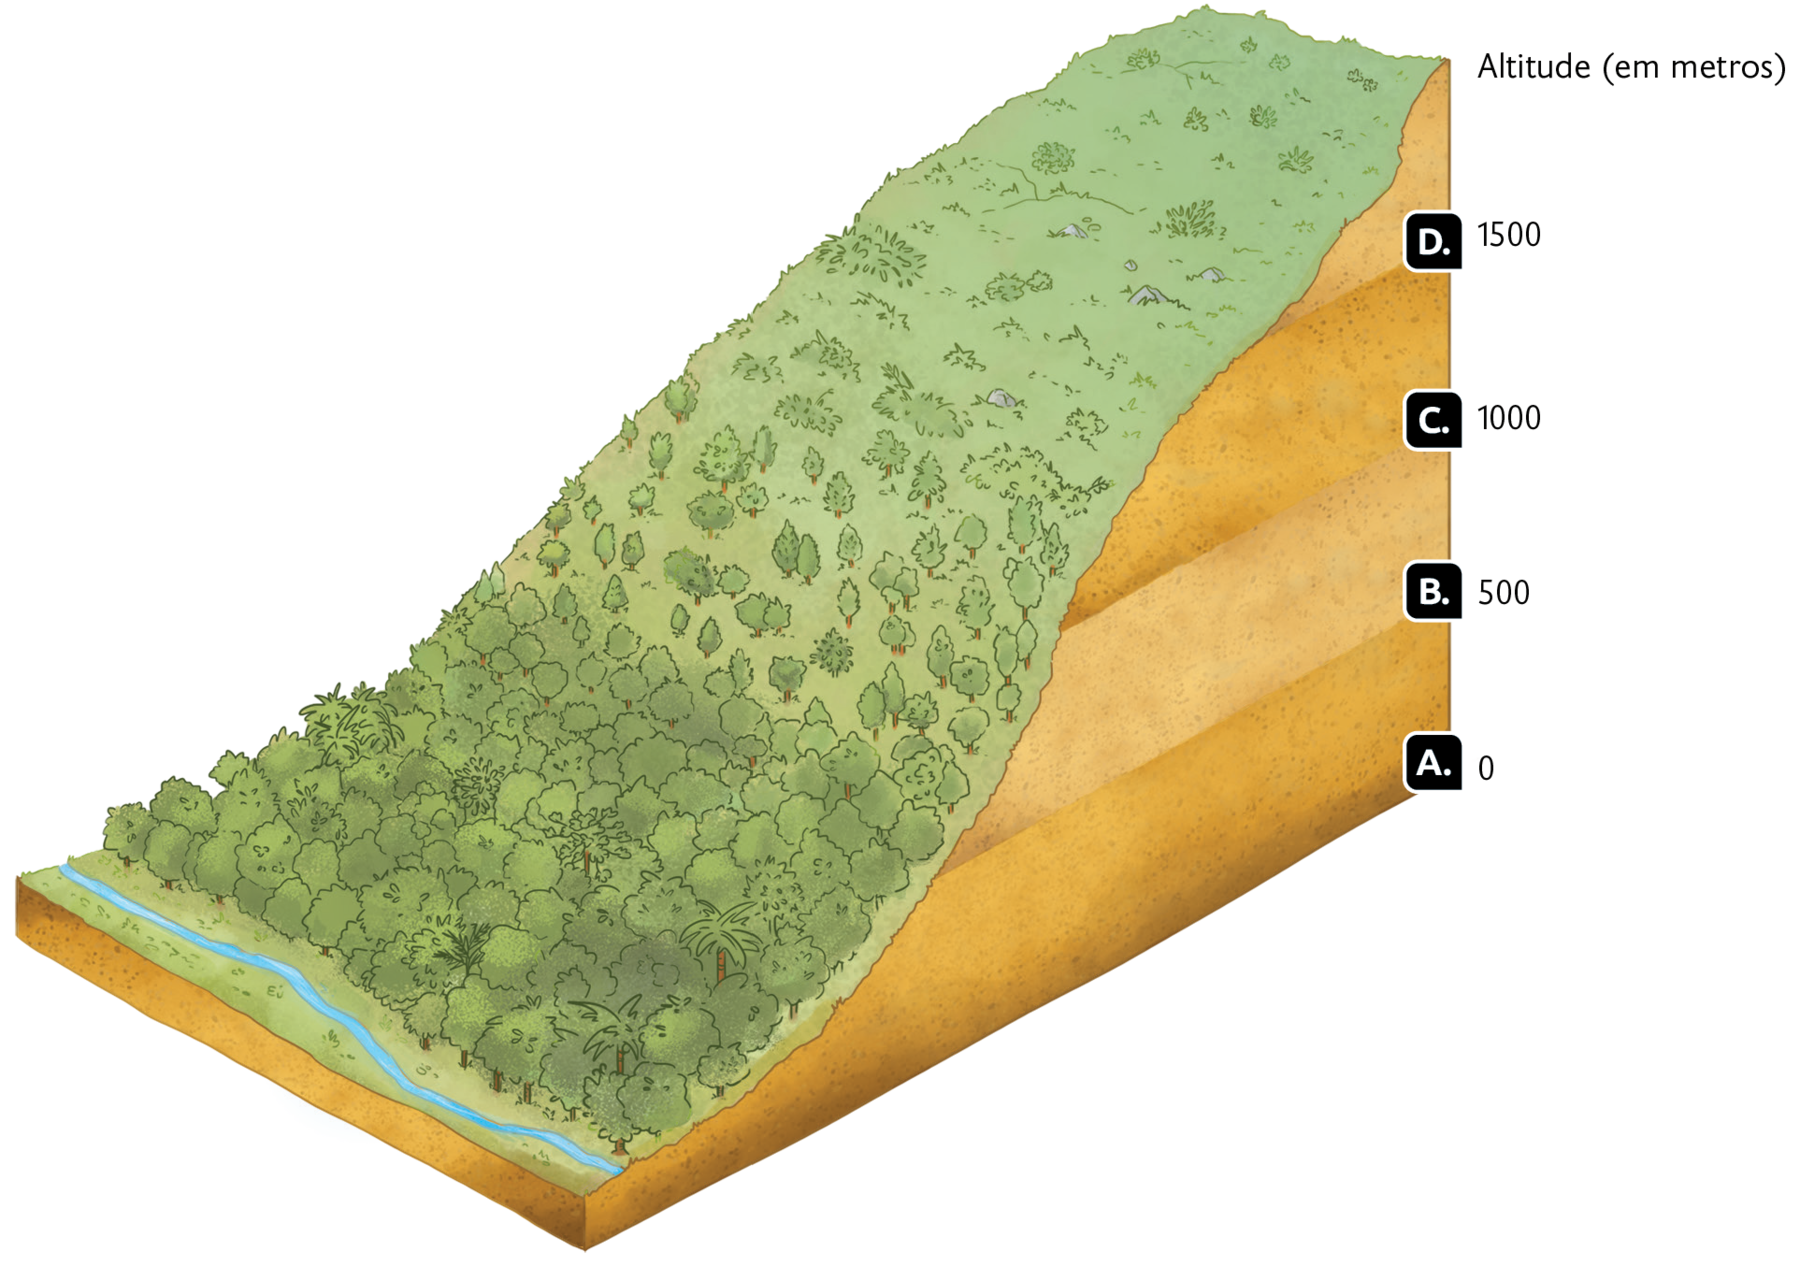 Esquema. Parte de uma montanha coberta por vegetação, com a indicação de Altitude (em metros). Do chão até o ponto mais alto estão os níveis assinalados com letras: A. 0; B. 500; C. 1000; D. 1500.